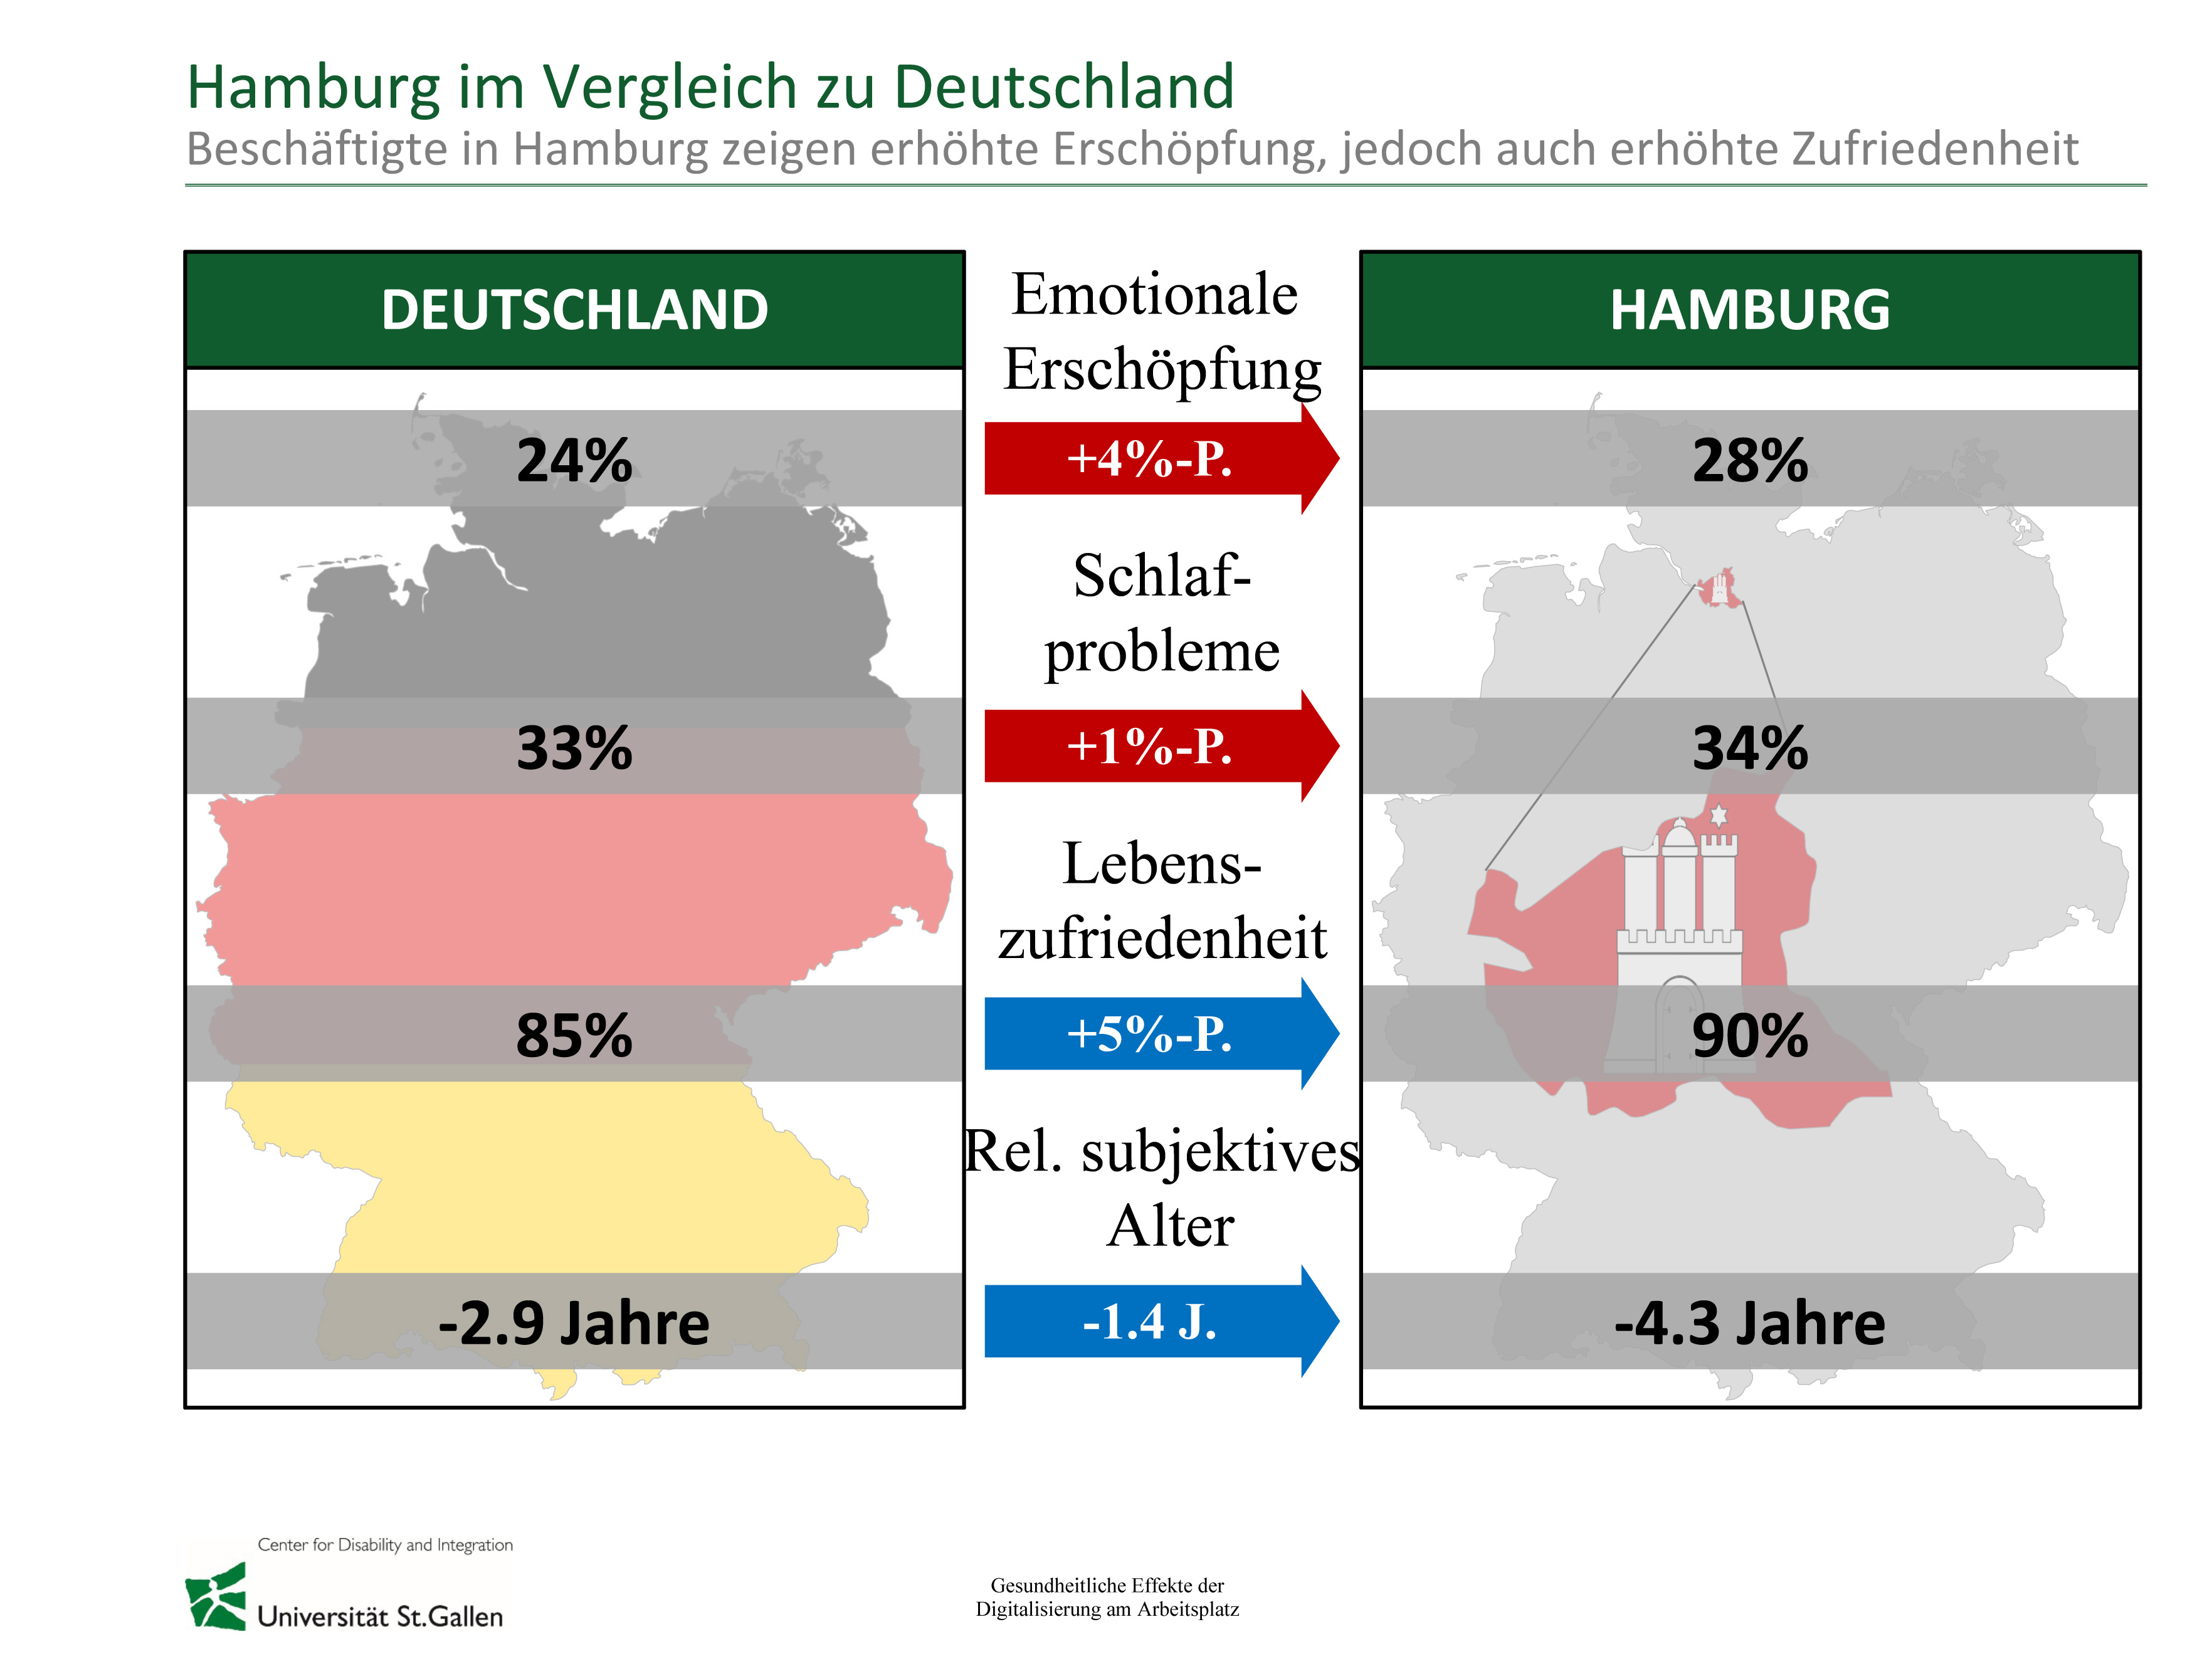 Die Grafik zeigt die Beschäftigten in Hamburg im Vergleich zu Deutschland.